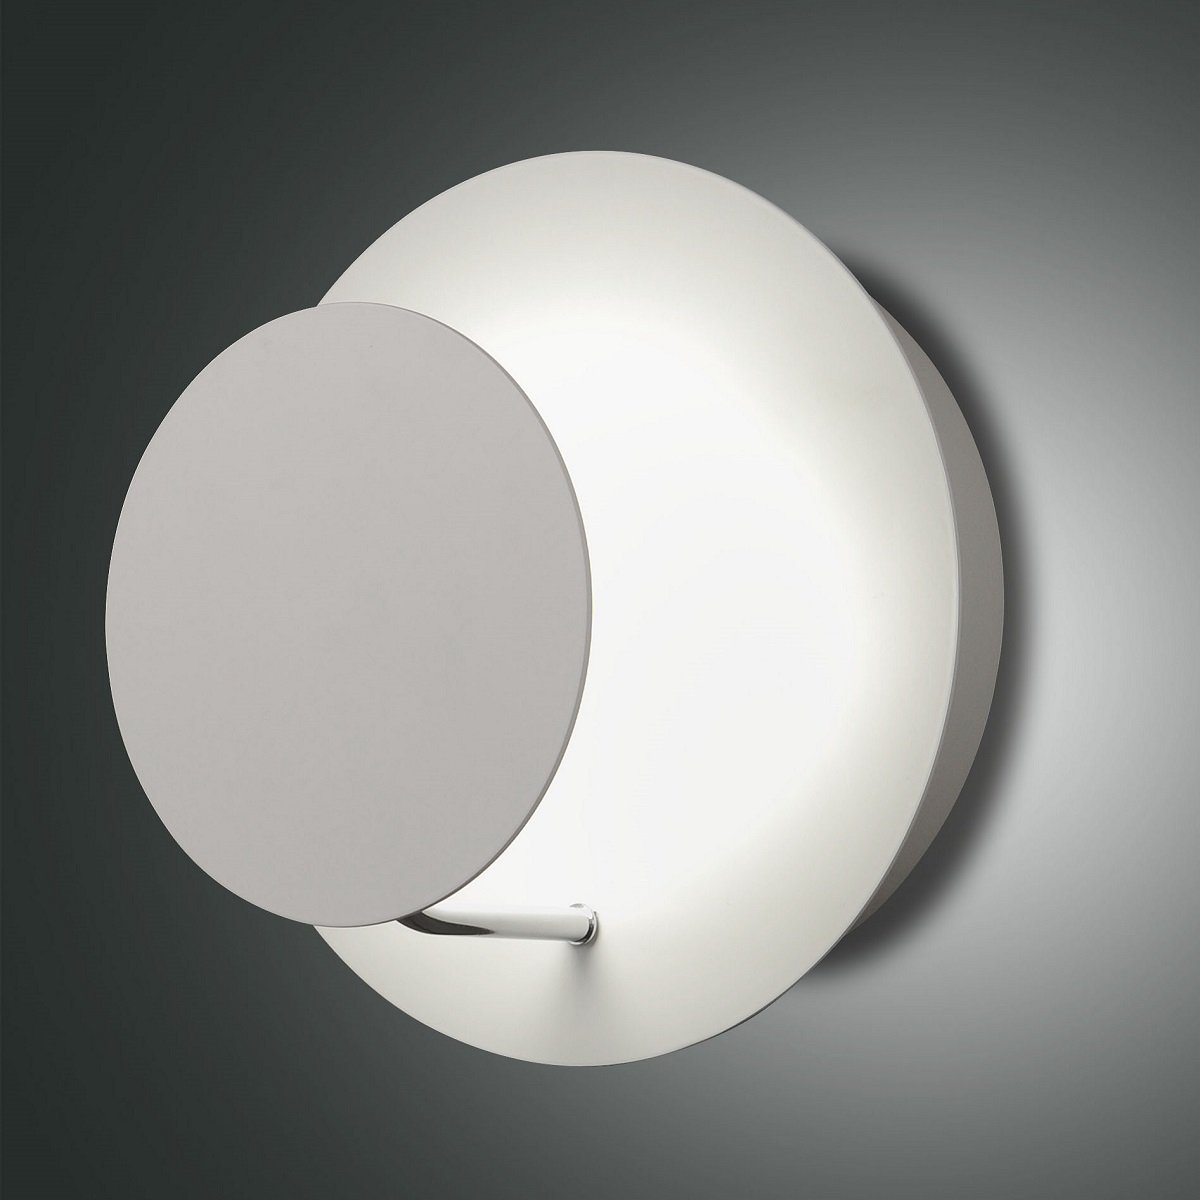 LED Design Wand Leuchte Lampe Full Moon Fabas Luce 3247-22-102 weiß dimmbar